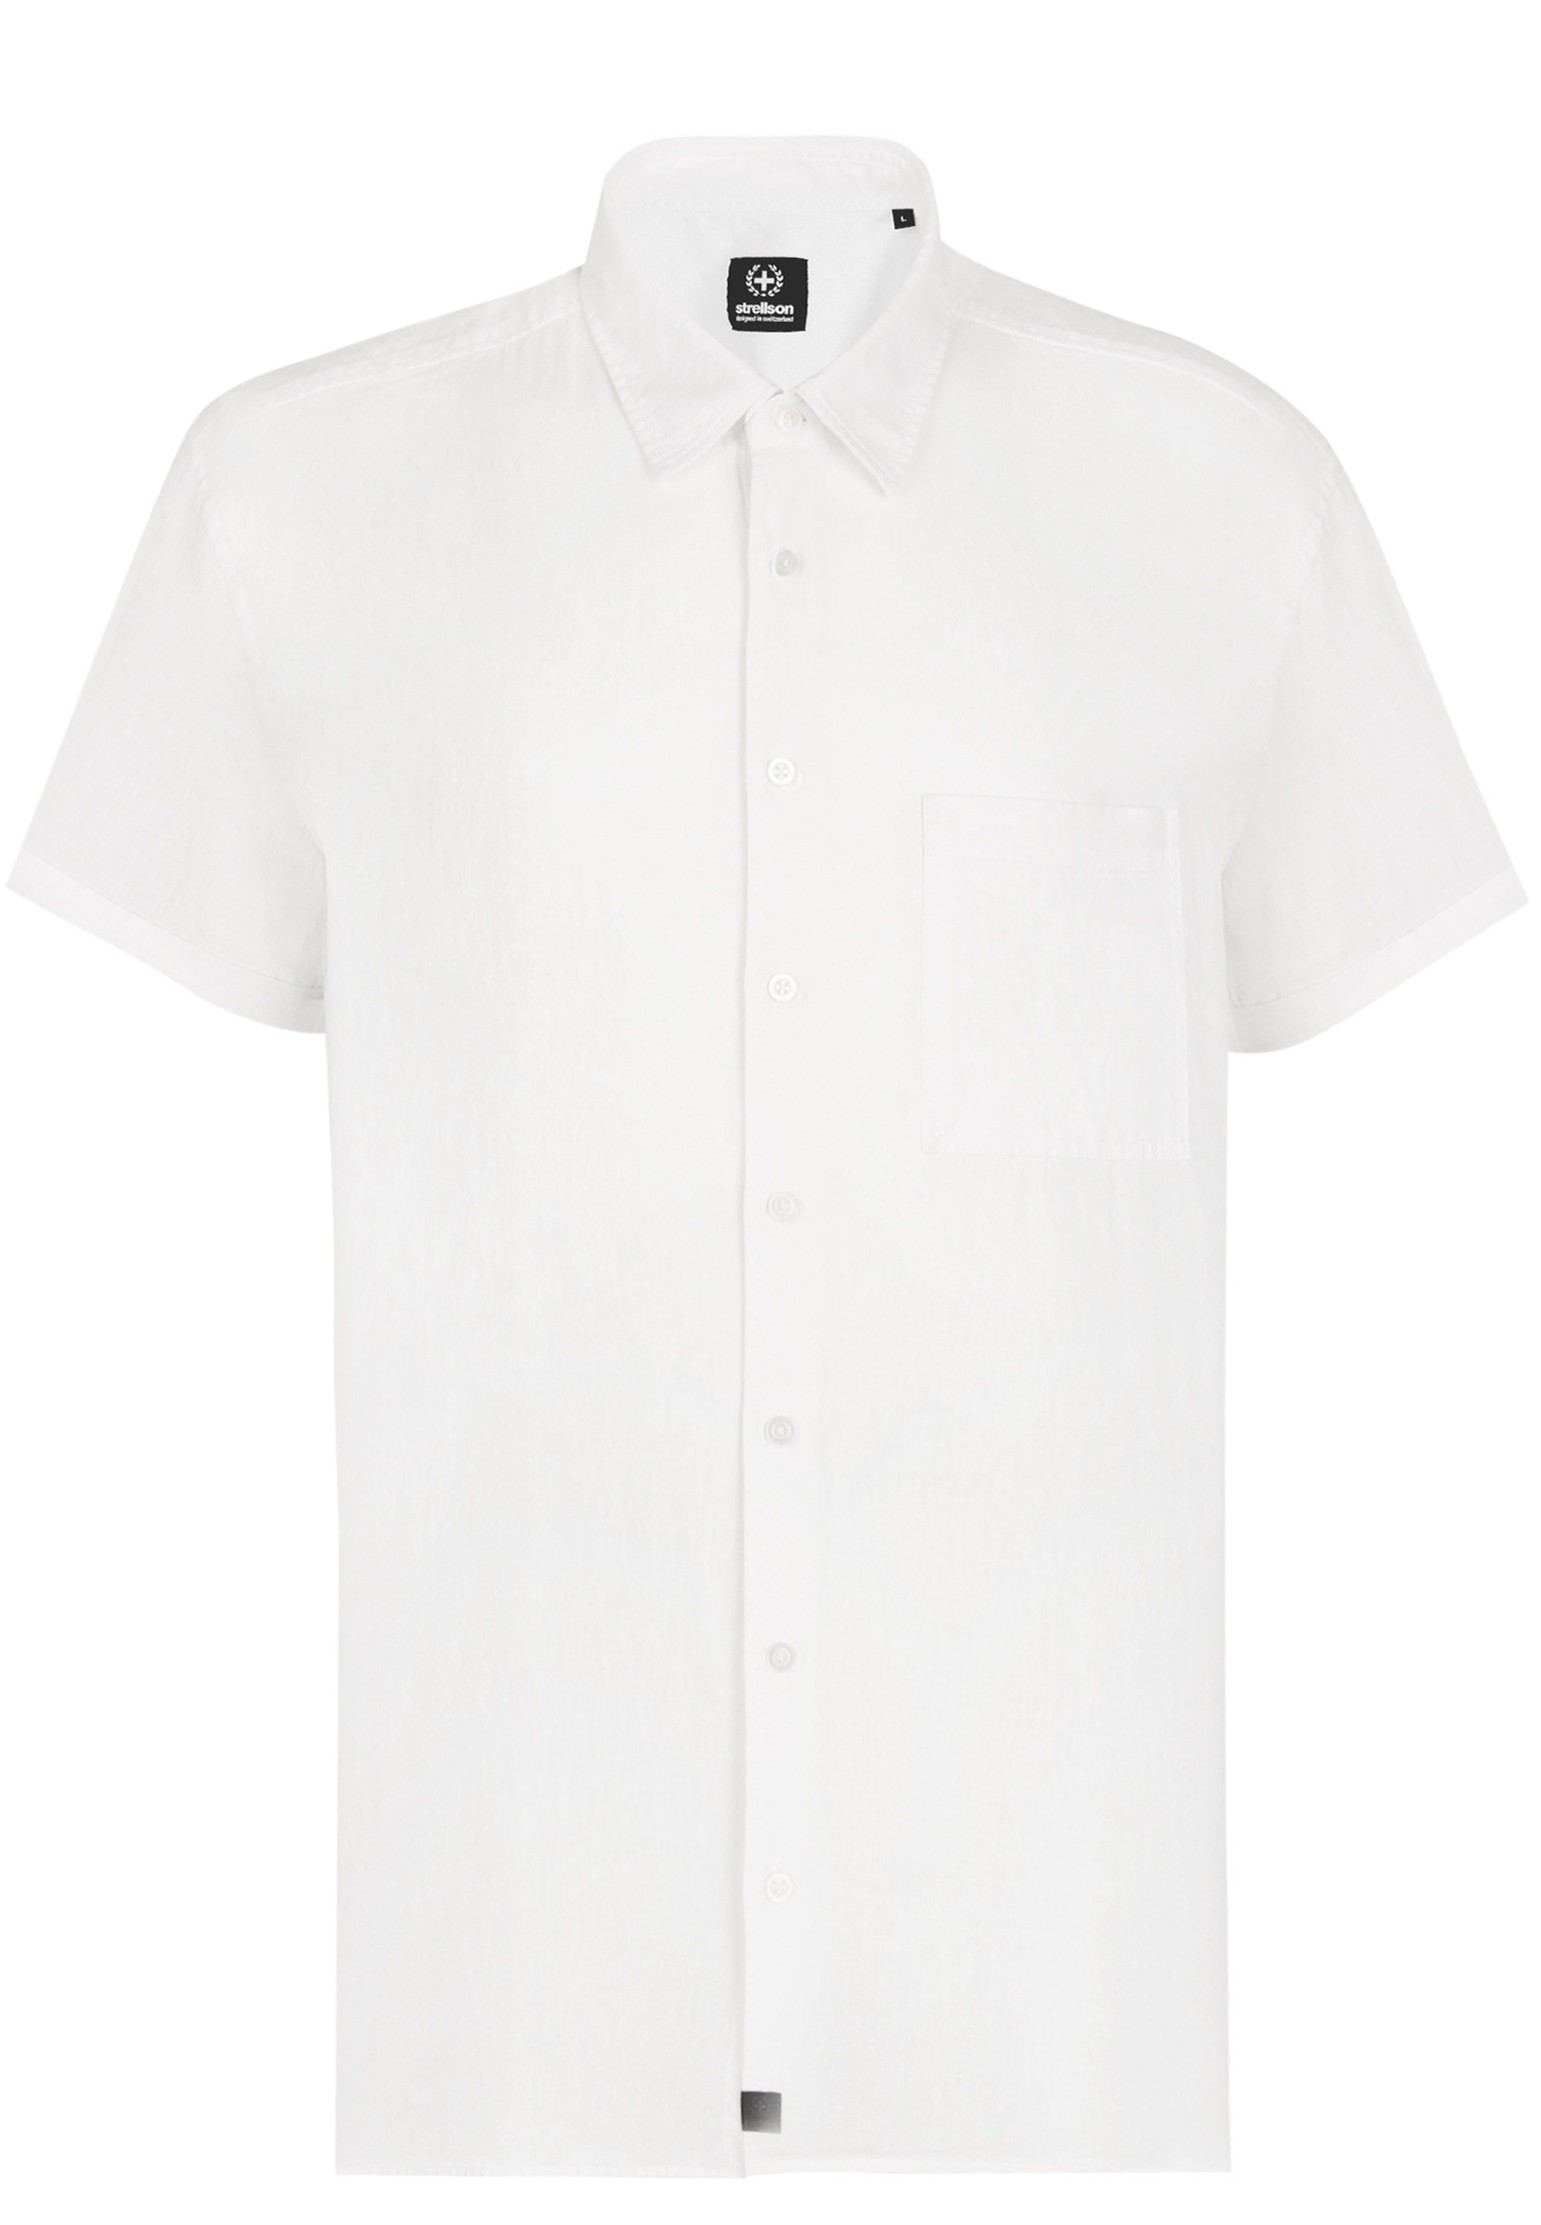 Рубашка мужская Strellson 127403 белая XL